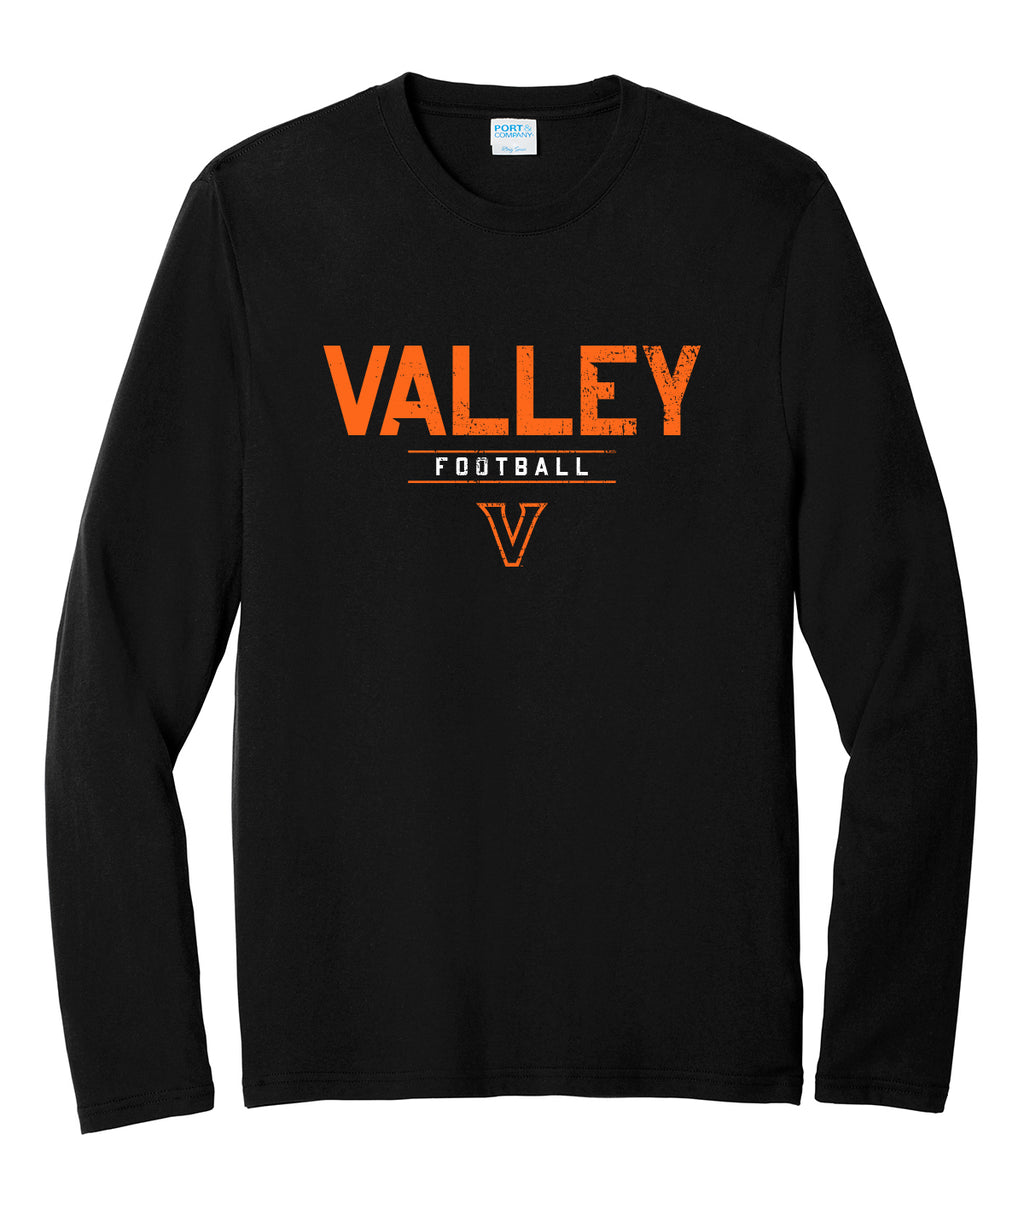 Valley Football Long-Sleeve Tee